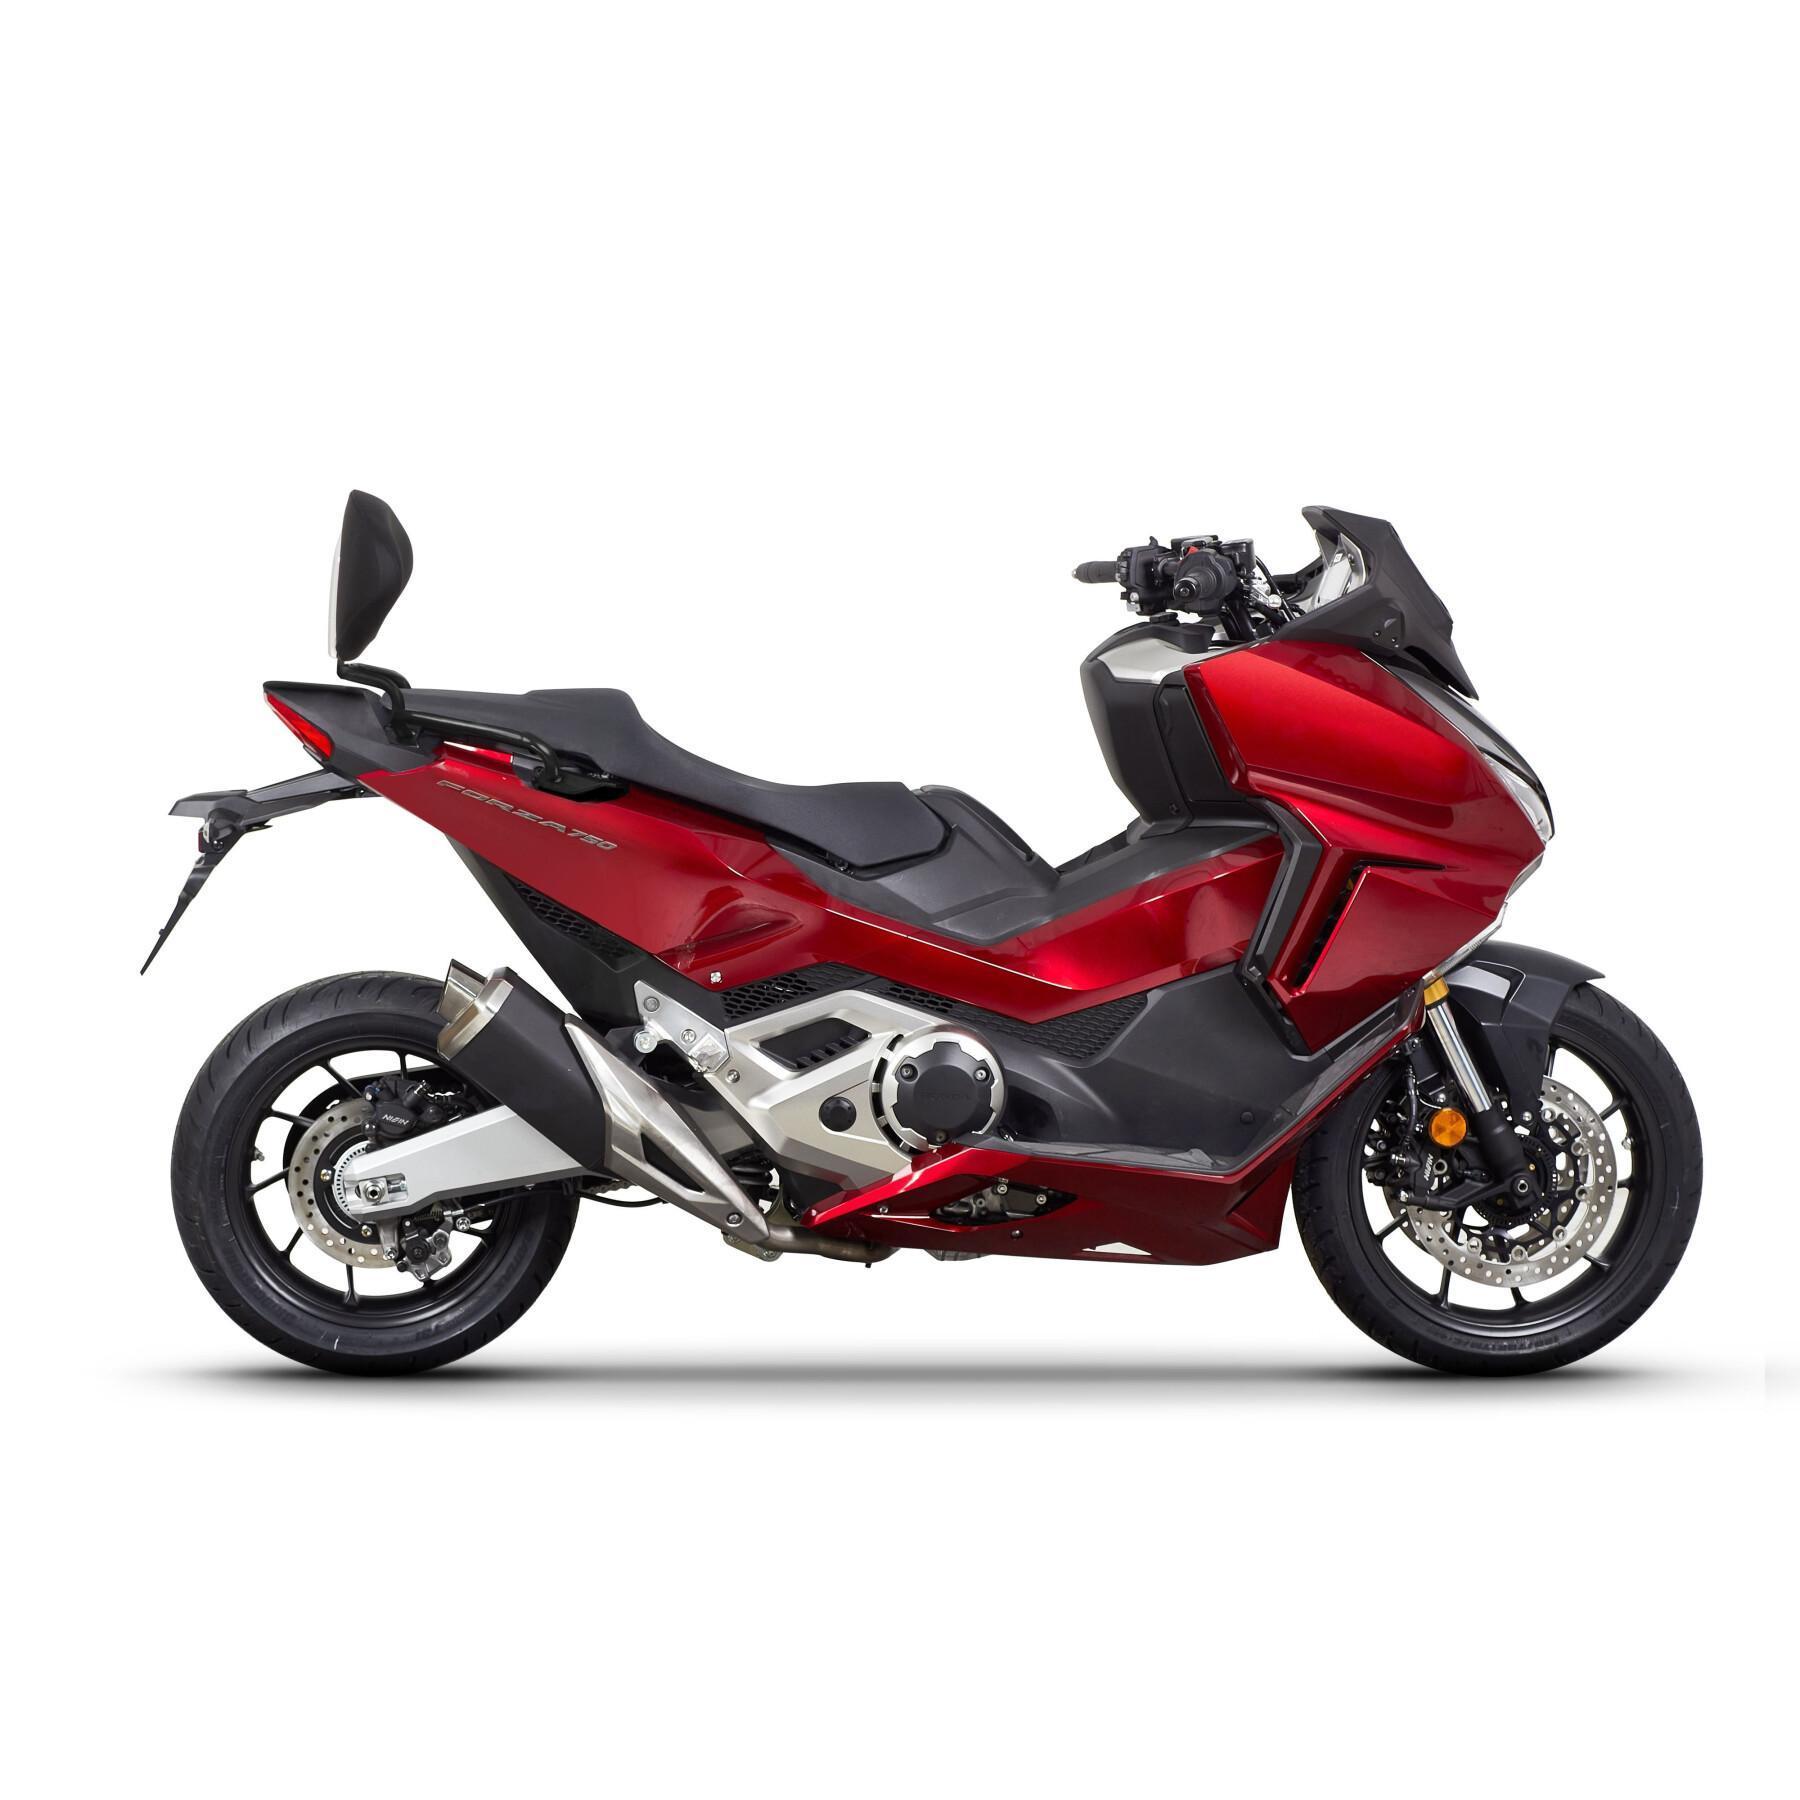 Motorrad-Rückenlehnenbefestigung Shad Honda x-adv /forza 750 2021-2022